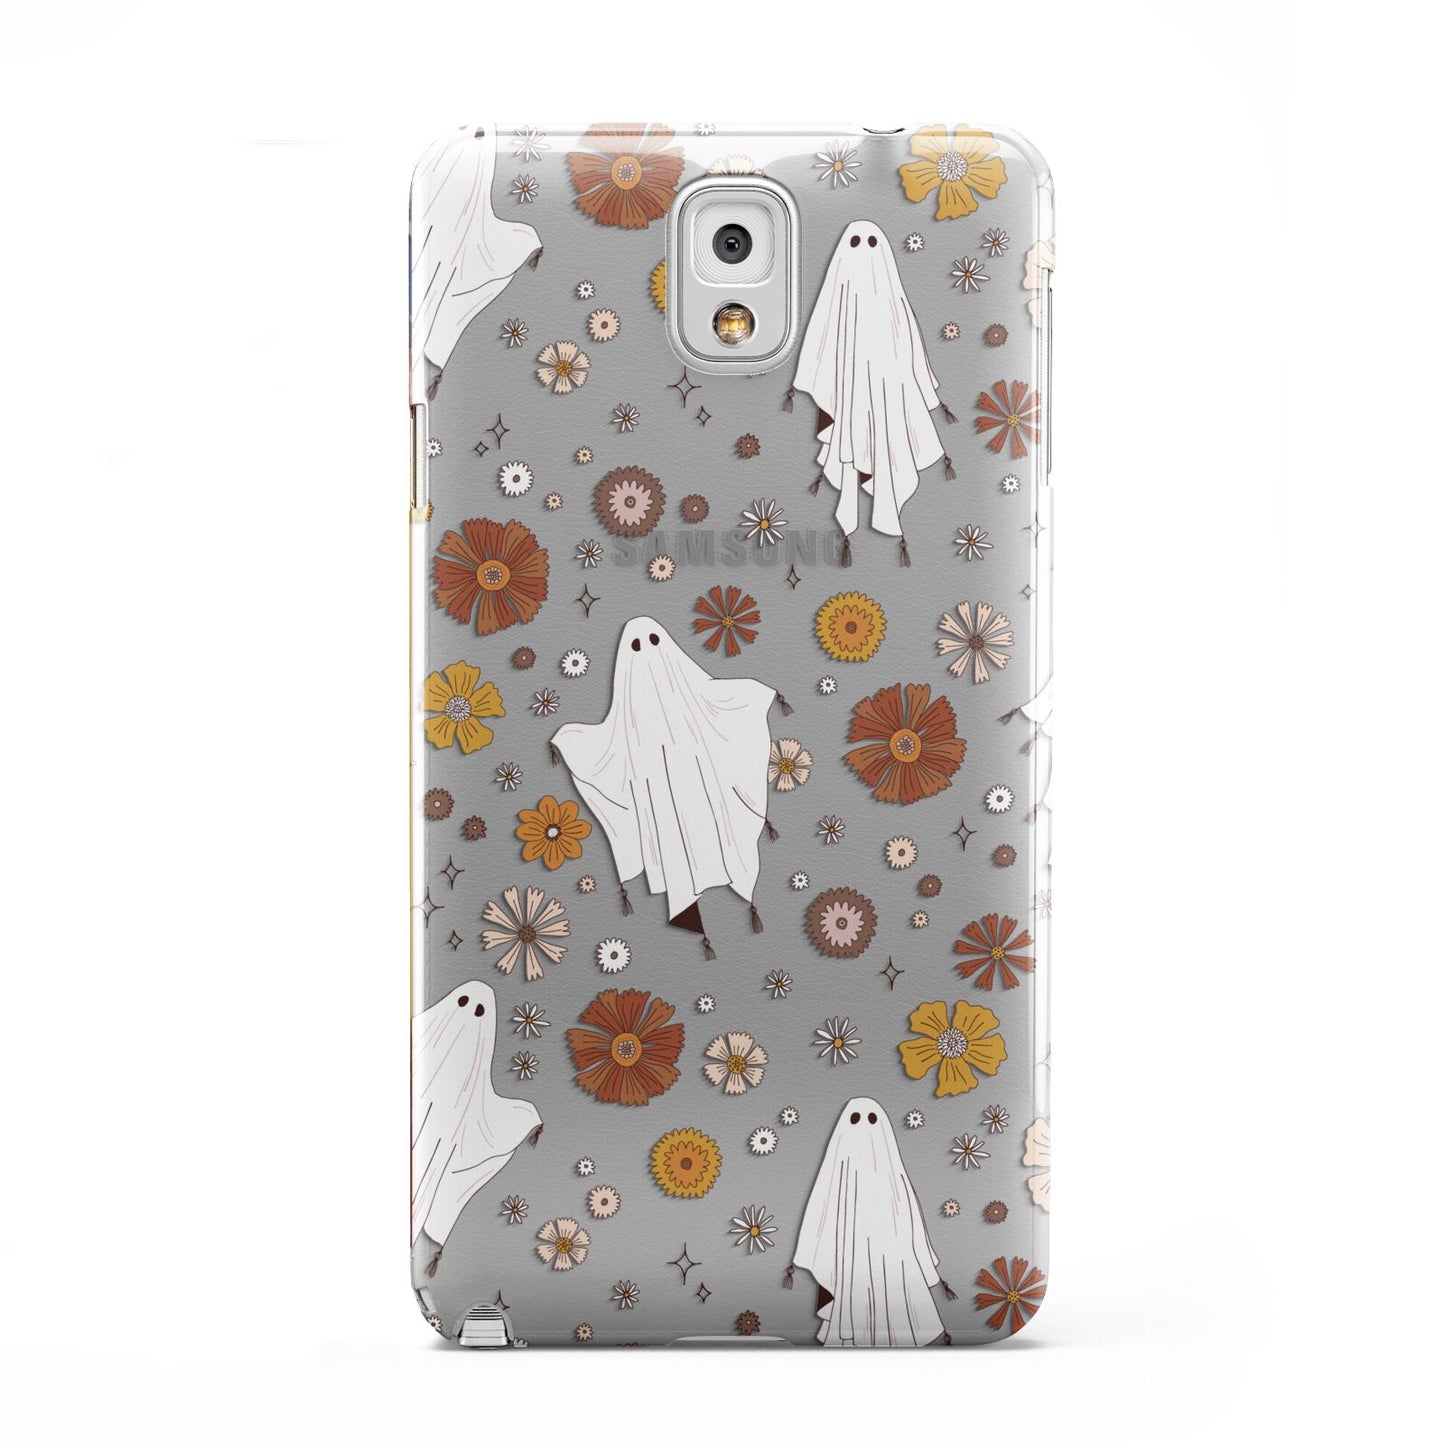 Halloween Ghost Samsung Galaxy Note 3 Case